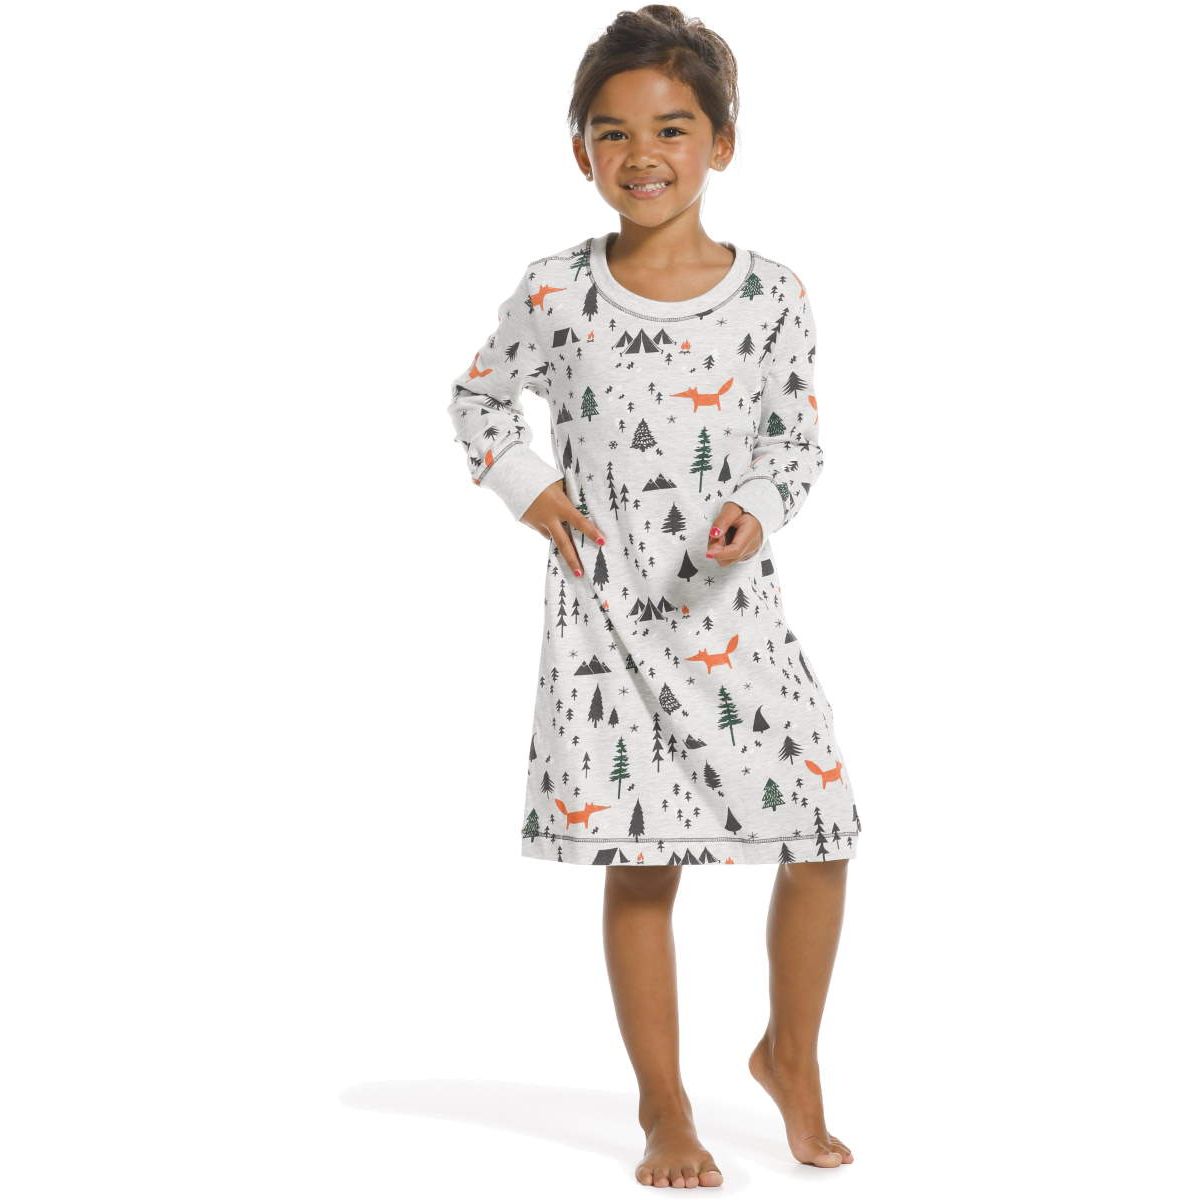 Meisjes nachthemd bos | vanaf € en gratis retour | Online de mooiste pyjama's, nachthemden, ondermode en meer